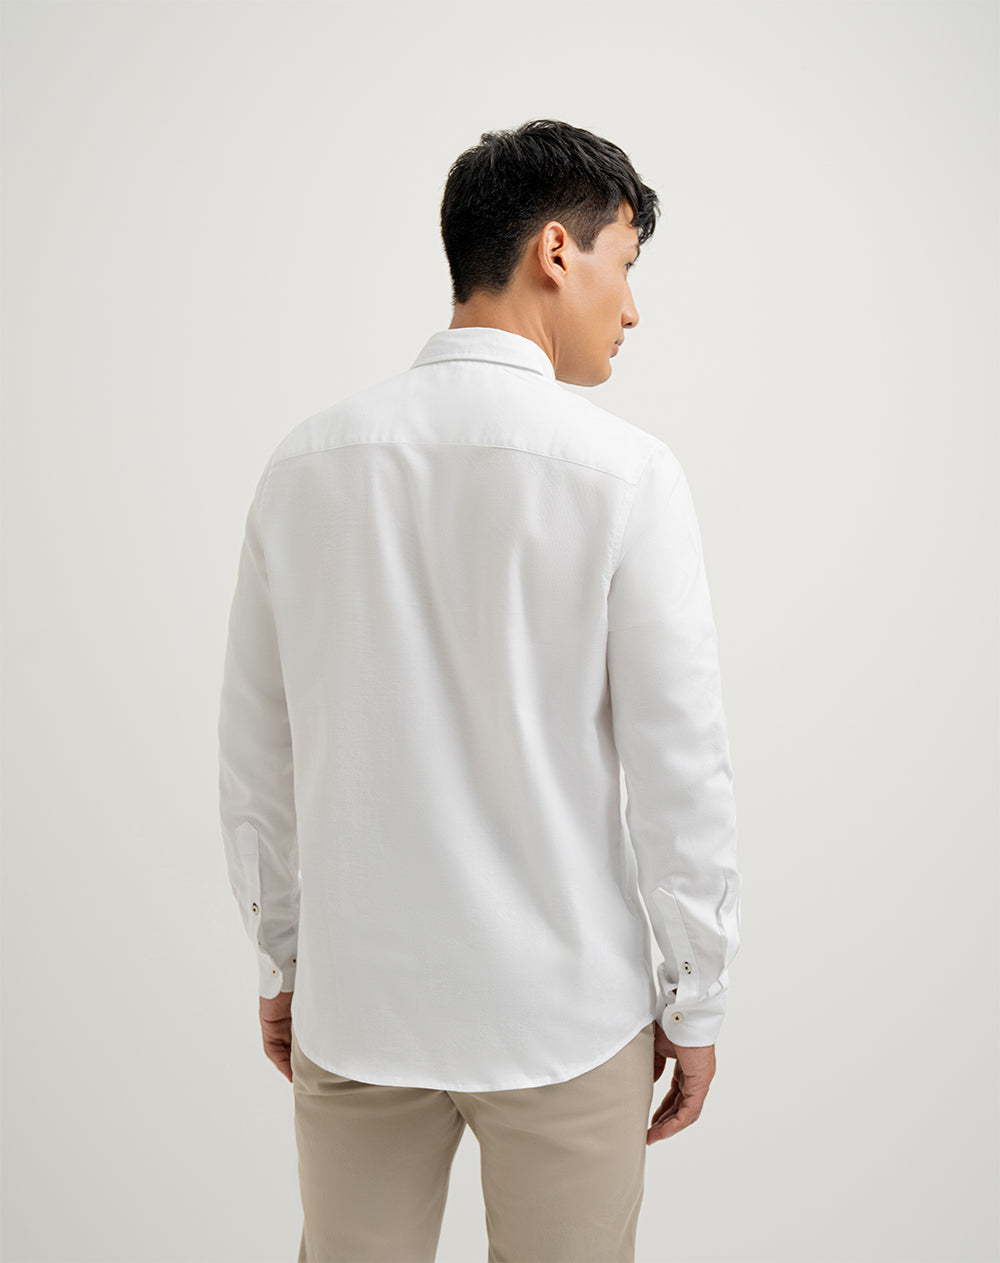 Camisa regular fit manga larga blanca